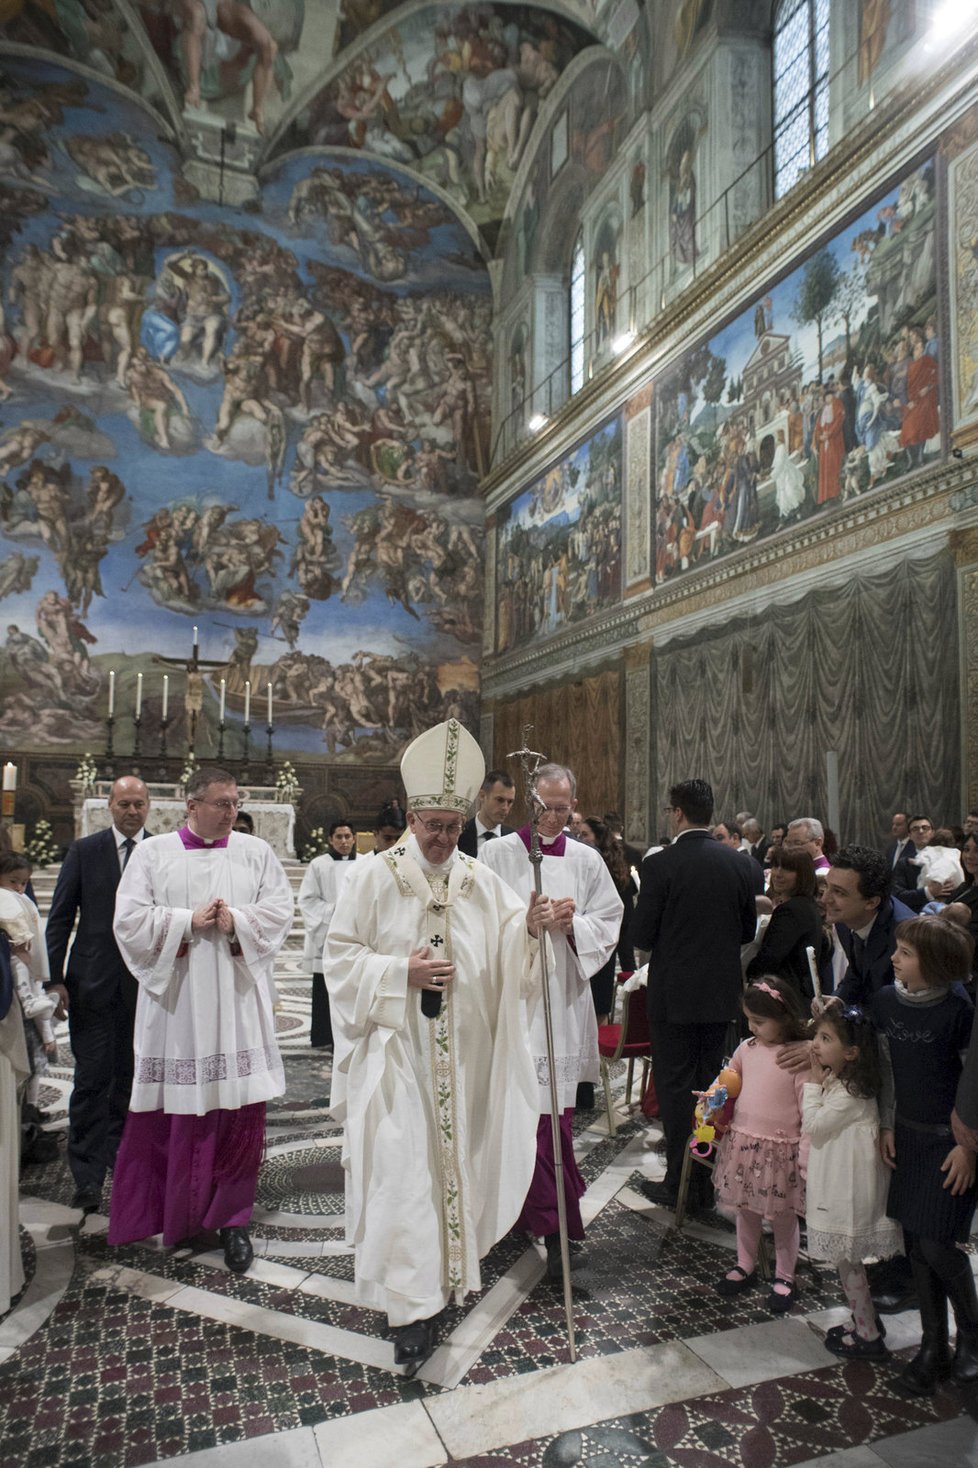 Papež František celebroval křestní mši.